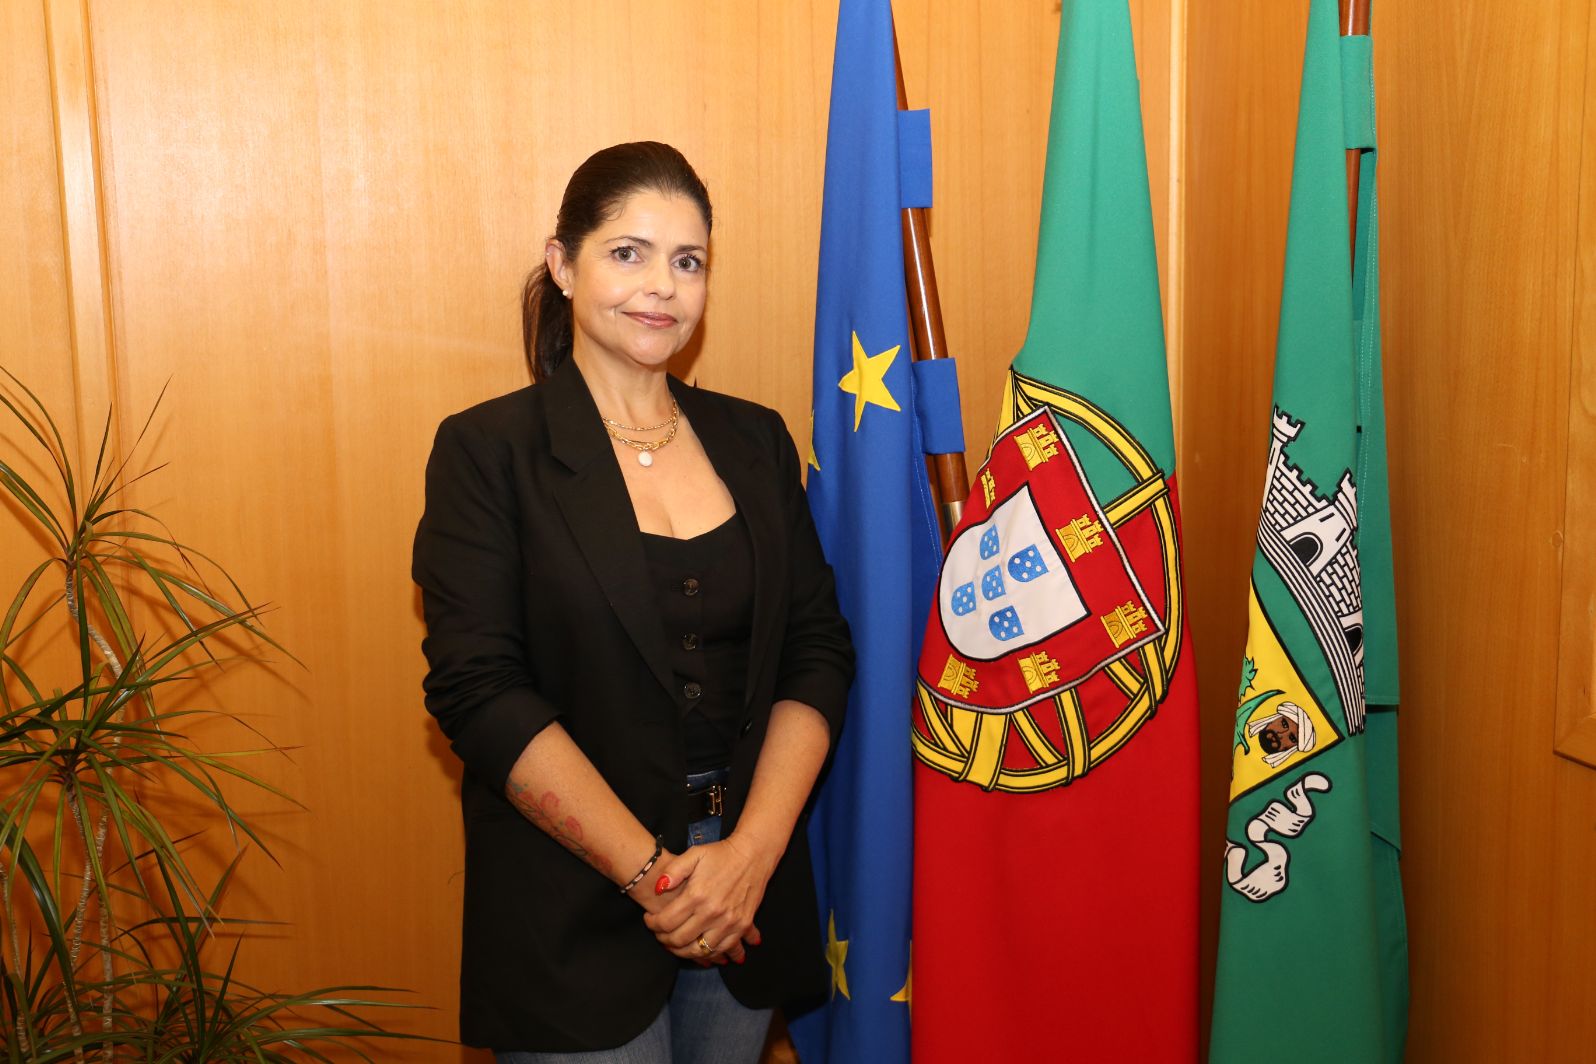 Dora Guerreiro é a nova vereadora da Câmara Municipal de Vila do Bispo